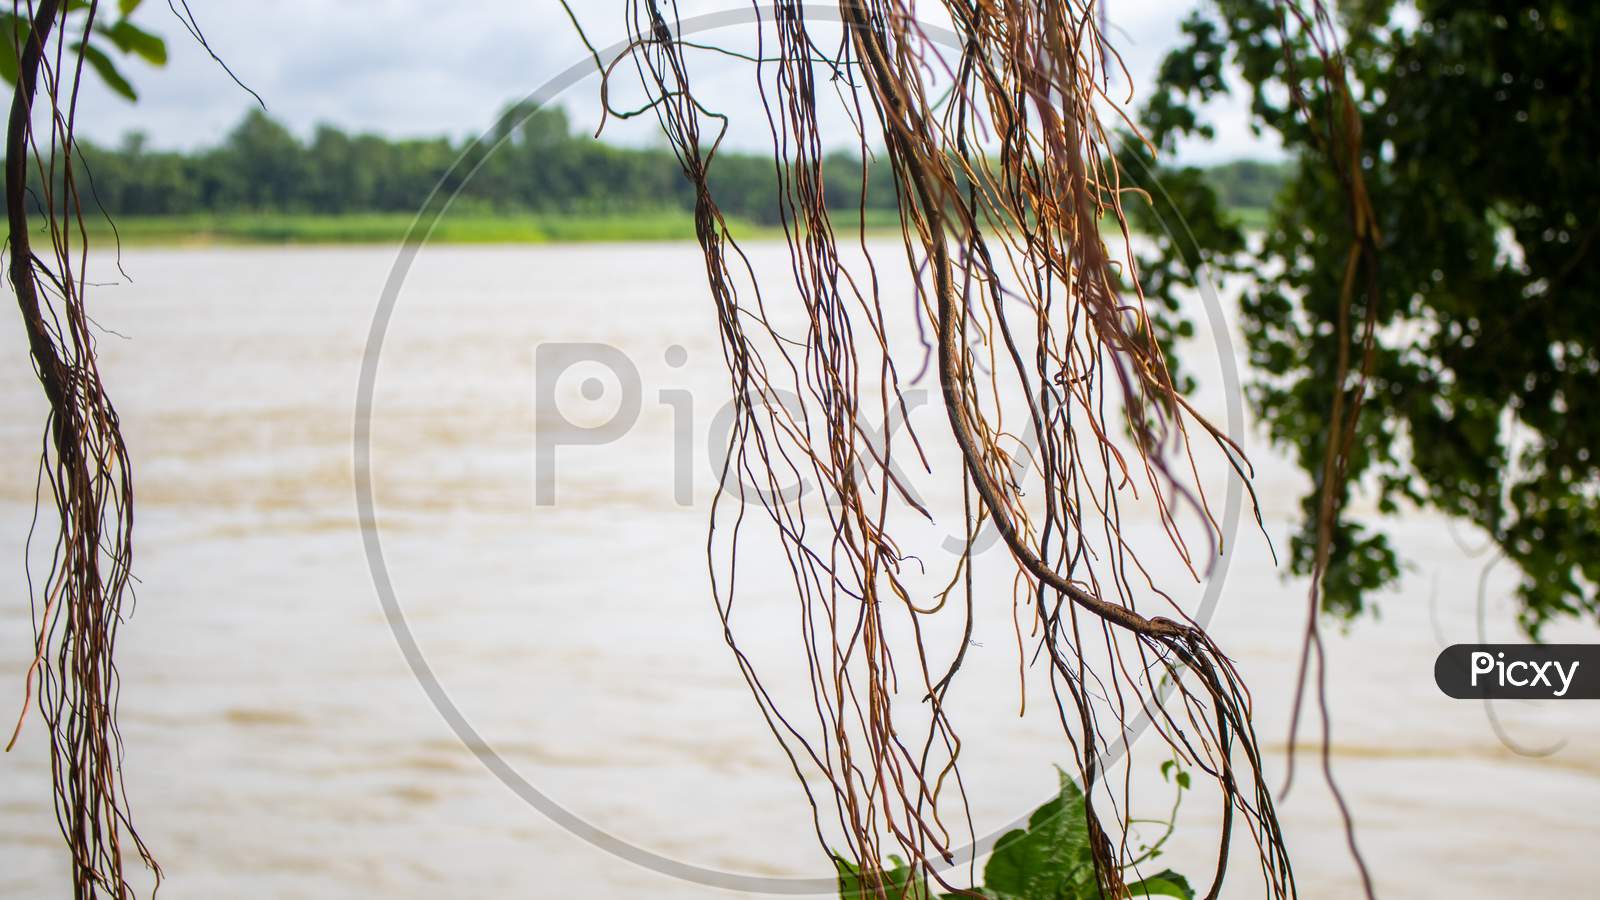 Image Of River Banks Of Bangladesh.